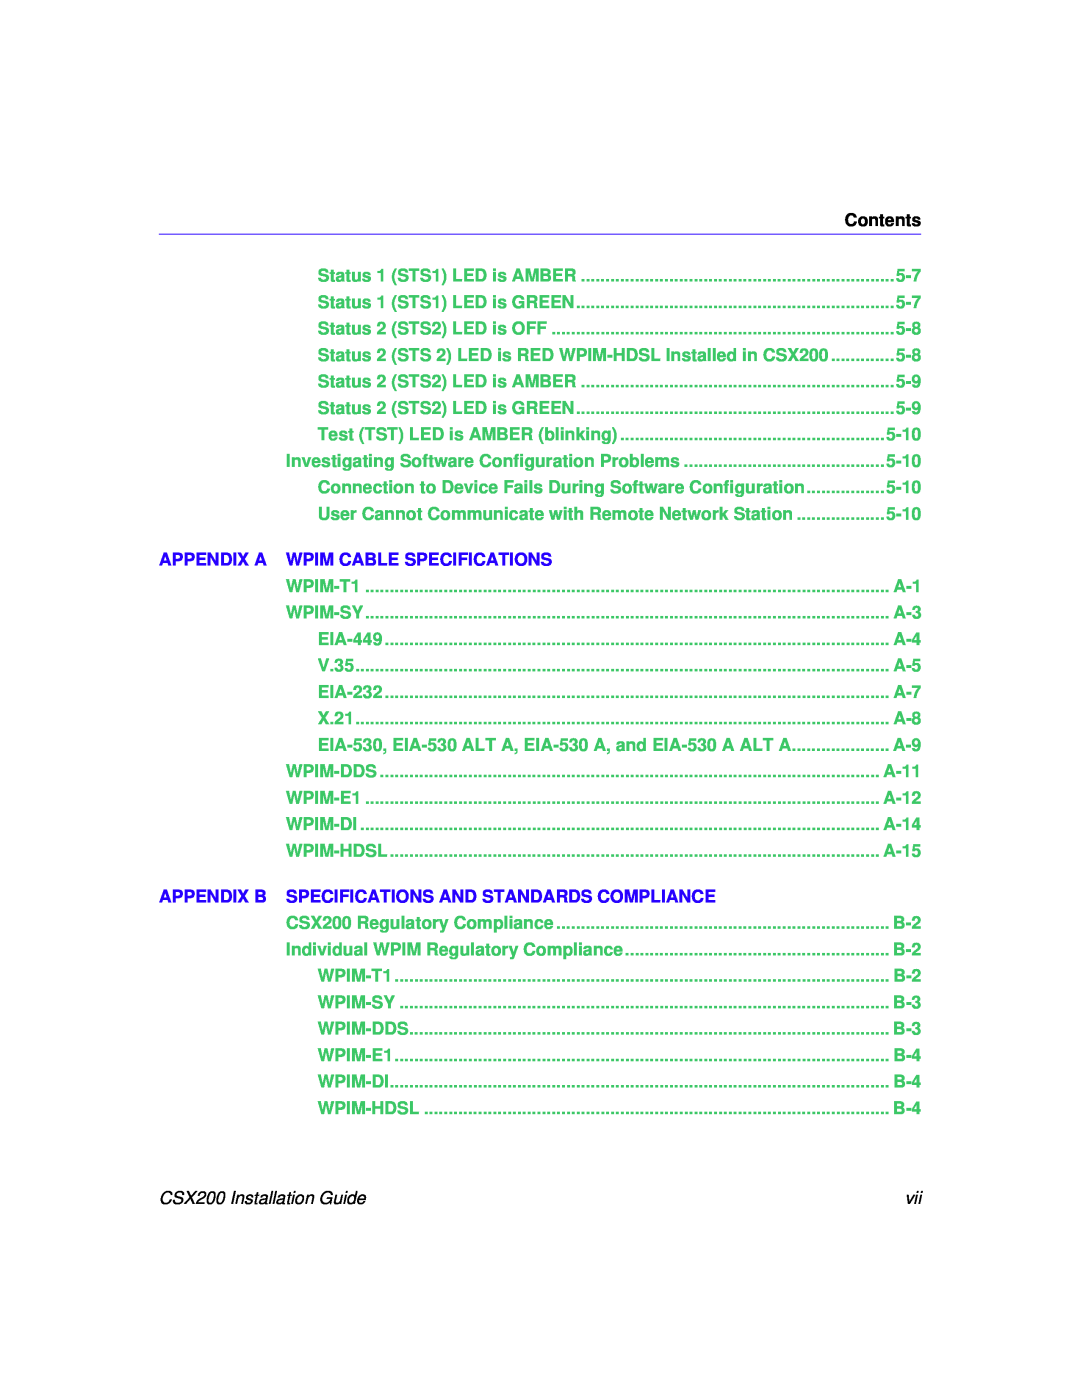 Cabletron Systems CSX200 manual Appendix A Wpim Cable Specifications, Appendix B Specifications And Standards Compliance 